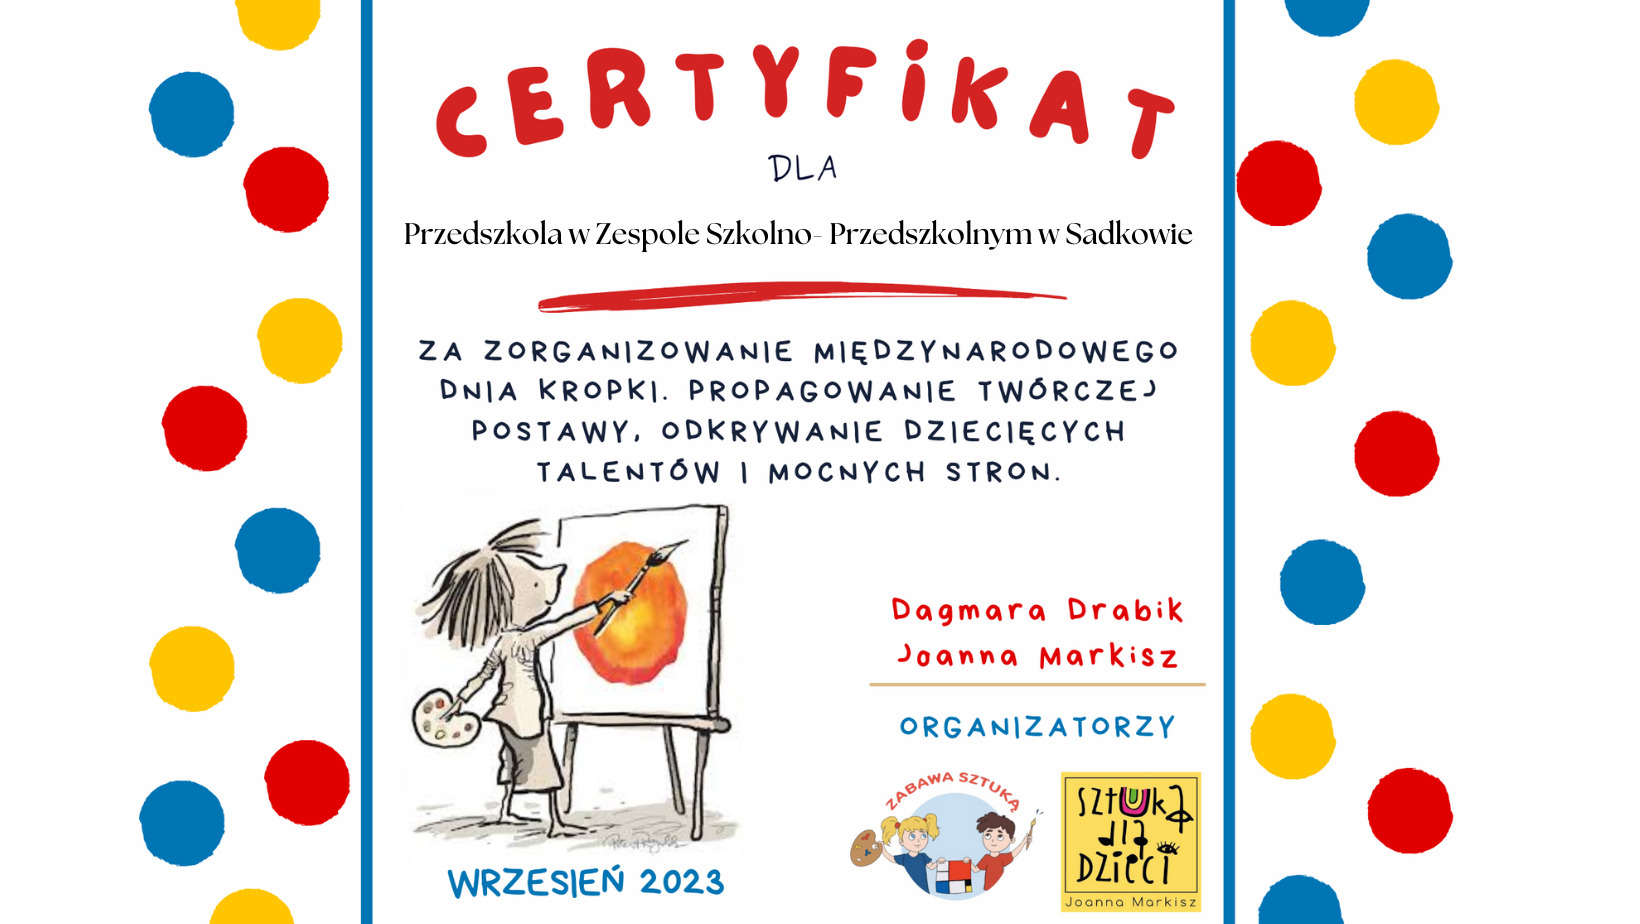 Certyfikat dla Przedszkola za udział w projekcie edukacyjnym - Obrazek 1